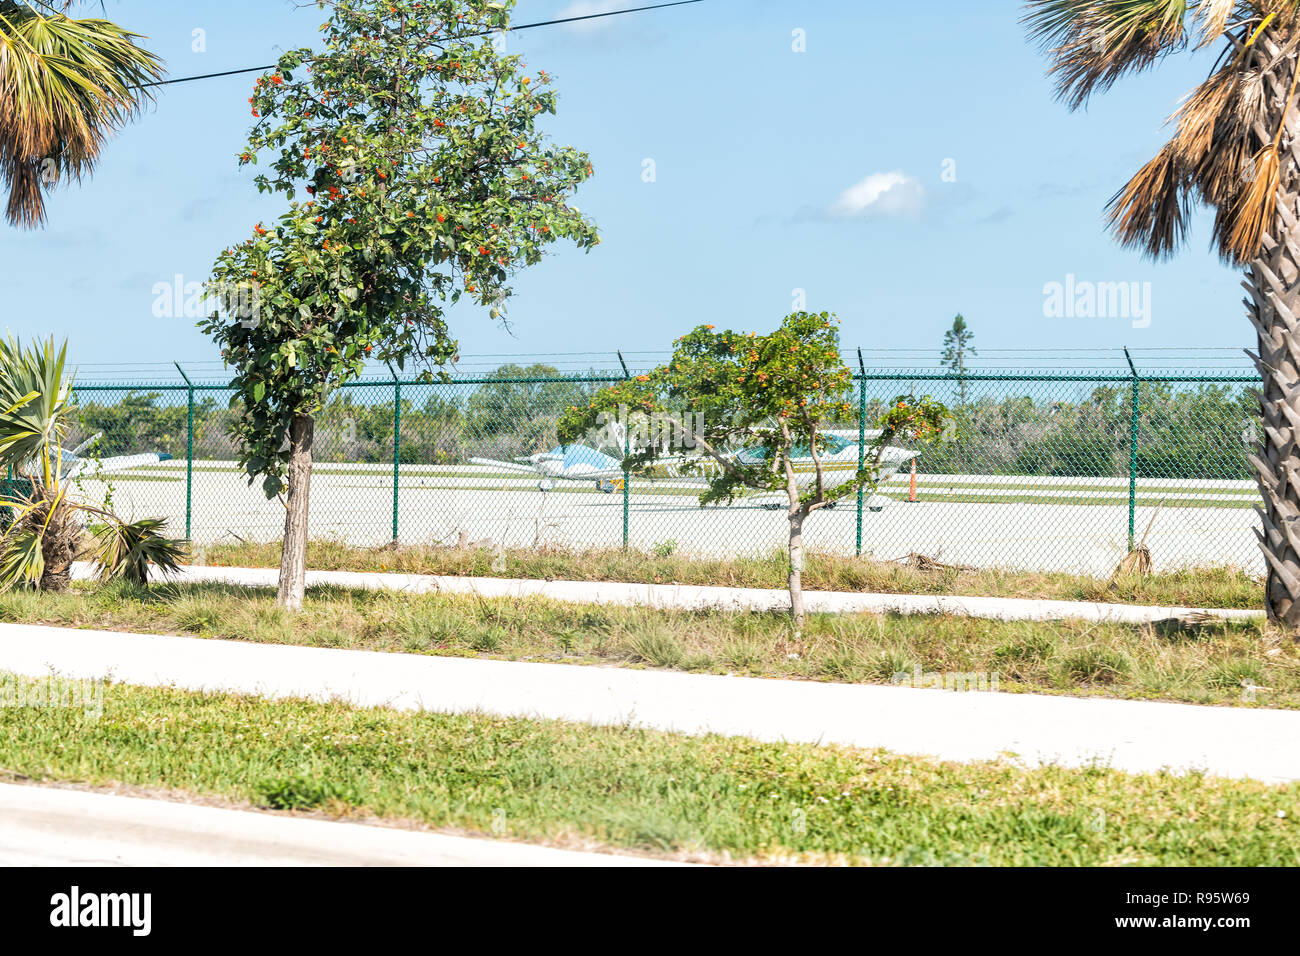 Maratona, Stati Uniti d'America - 1 Maggio 2018: Florida Keys Aeroporto Internazionale, MTH con una pista, gli aerei parcheggiati, palme lungo la Overseas Highway, US1 ROTTA, Foto Stock